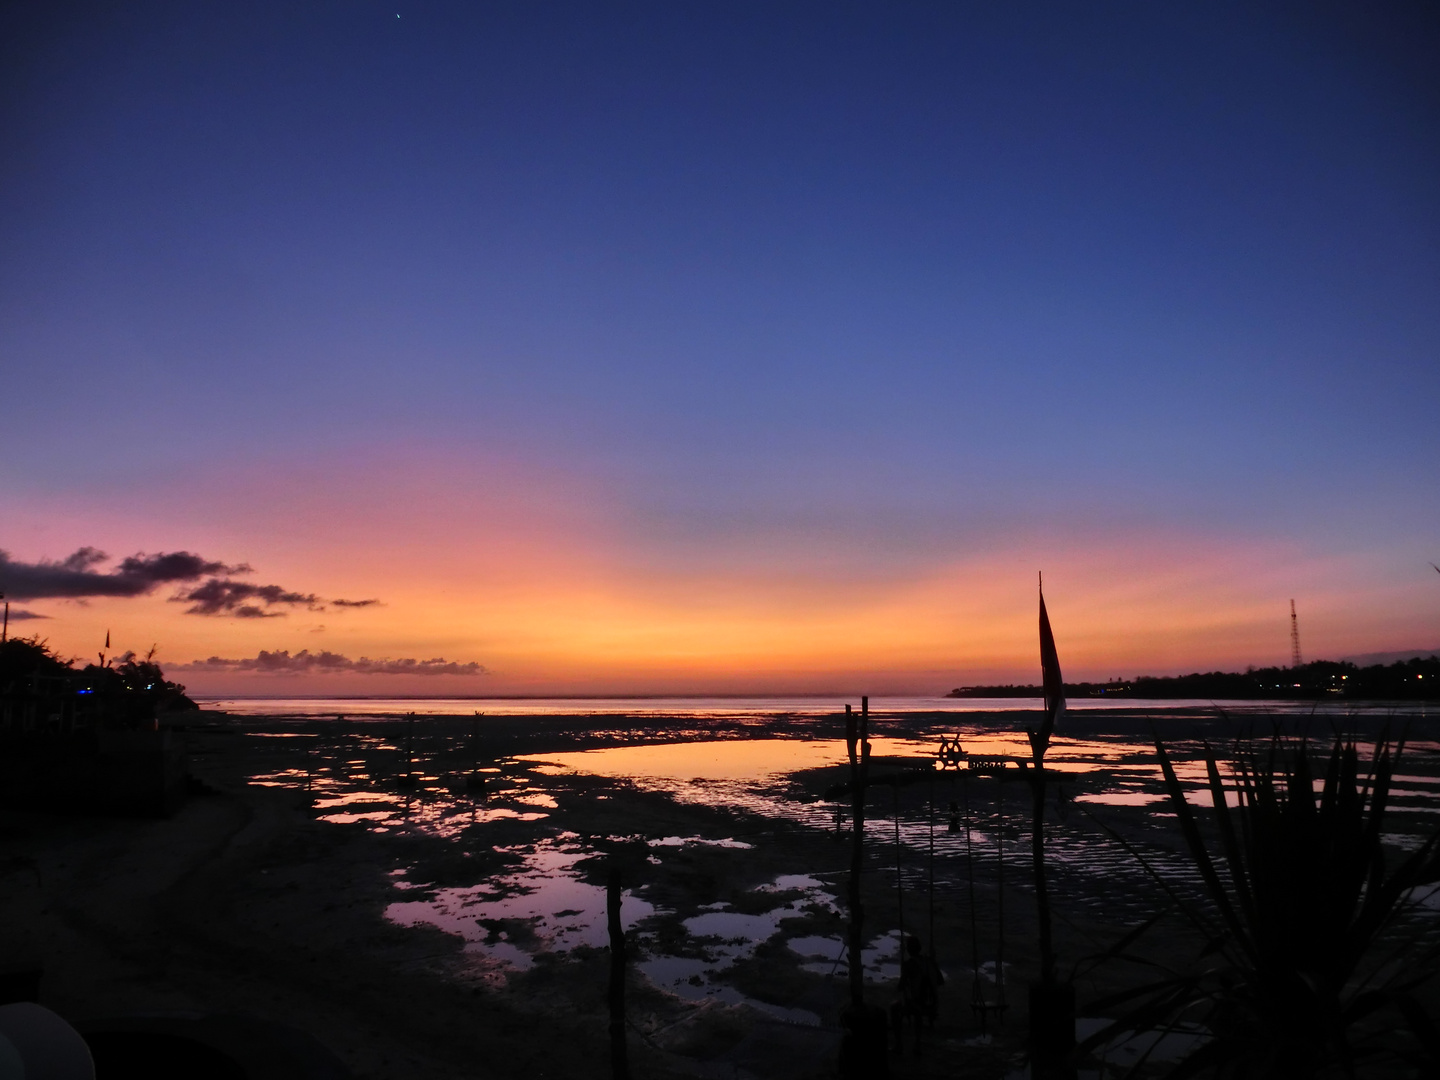 Sonnenuntergang zwischen Nusa Lembongan und Nusa Ceningan bei Ebbe